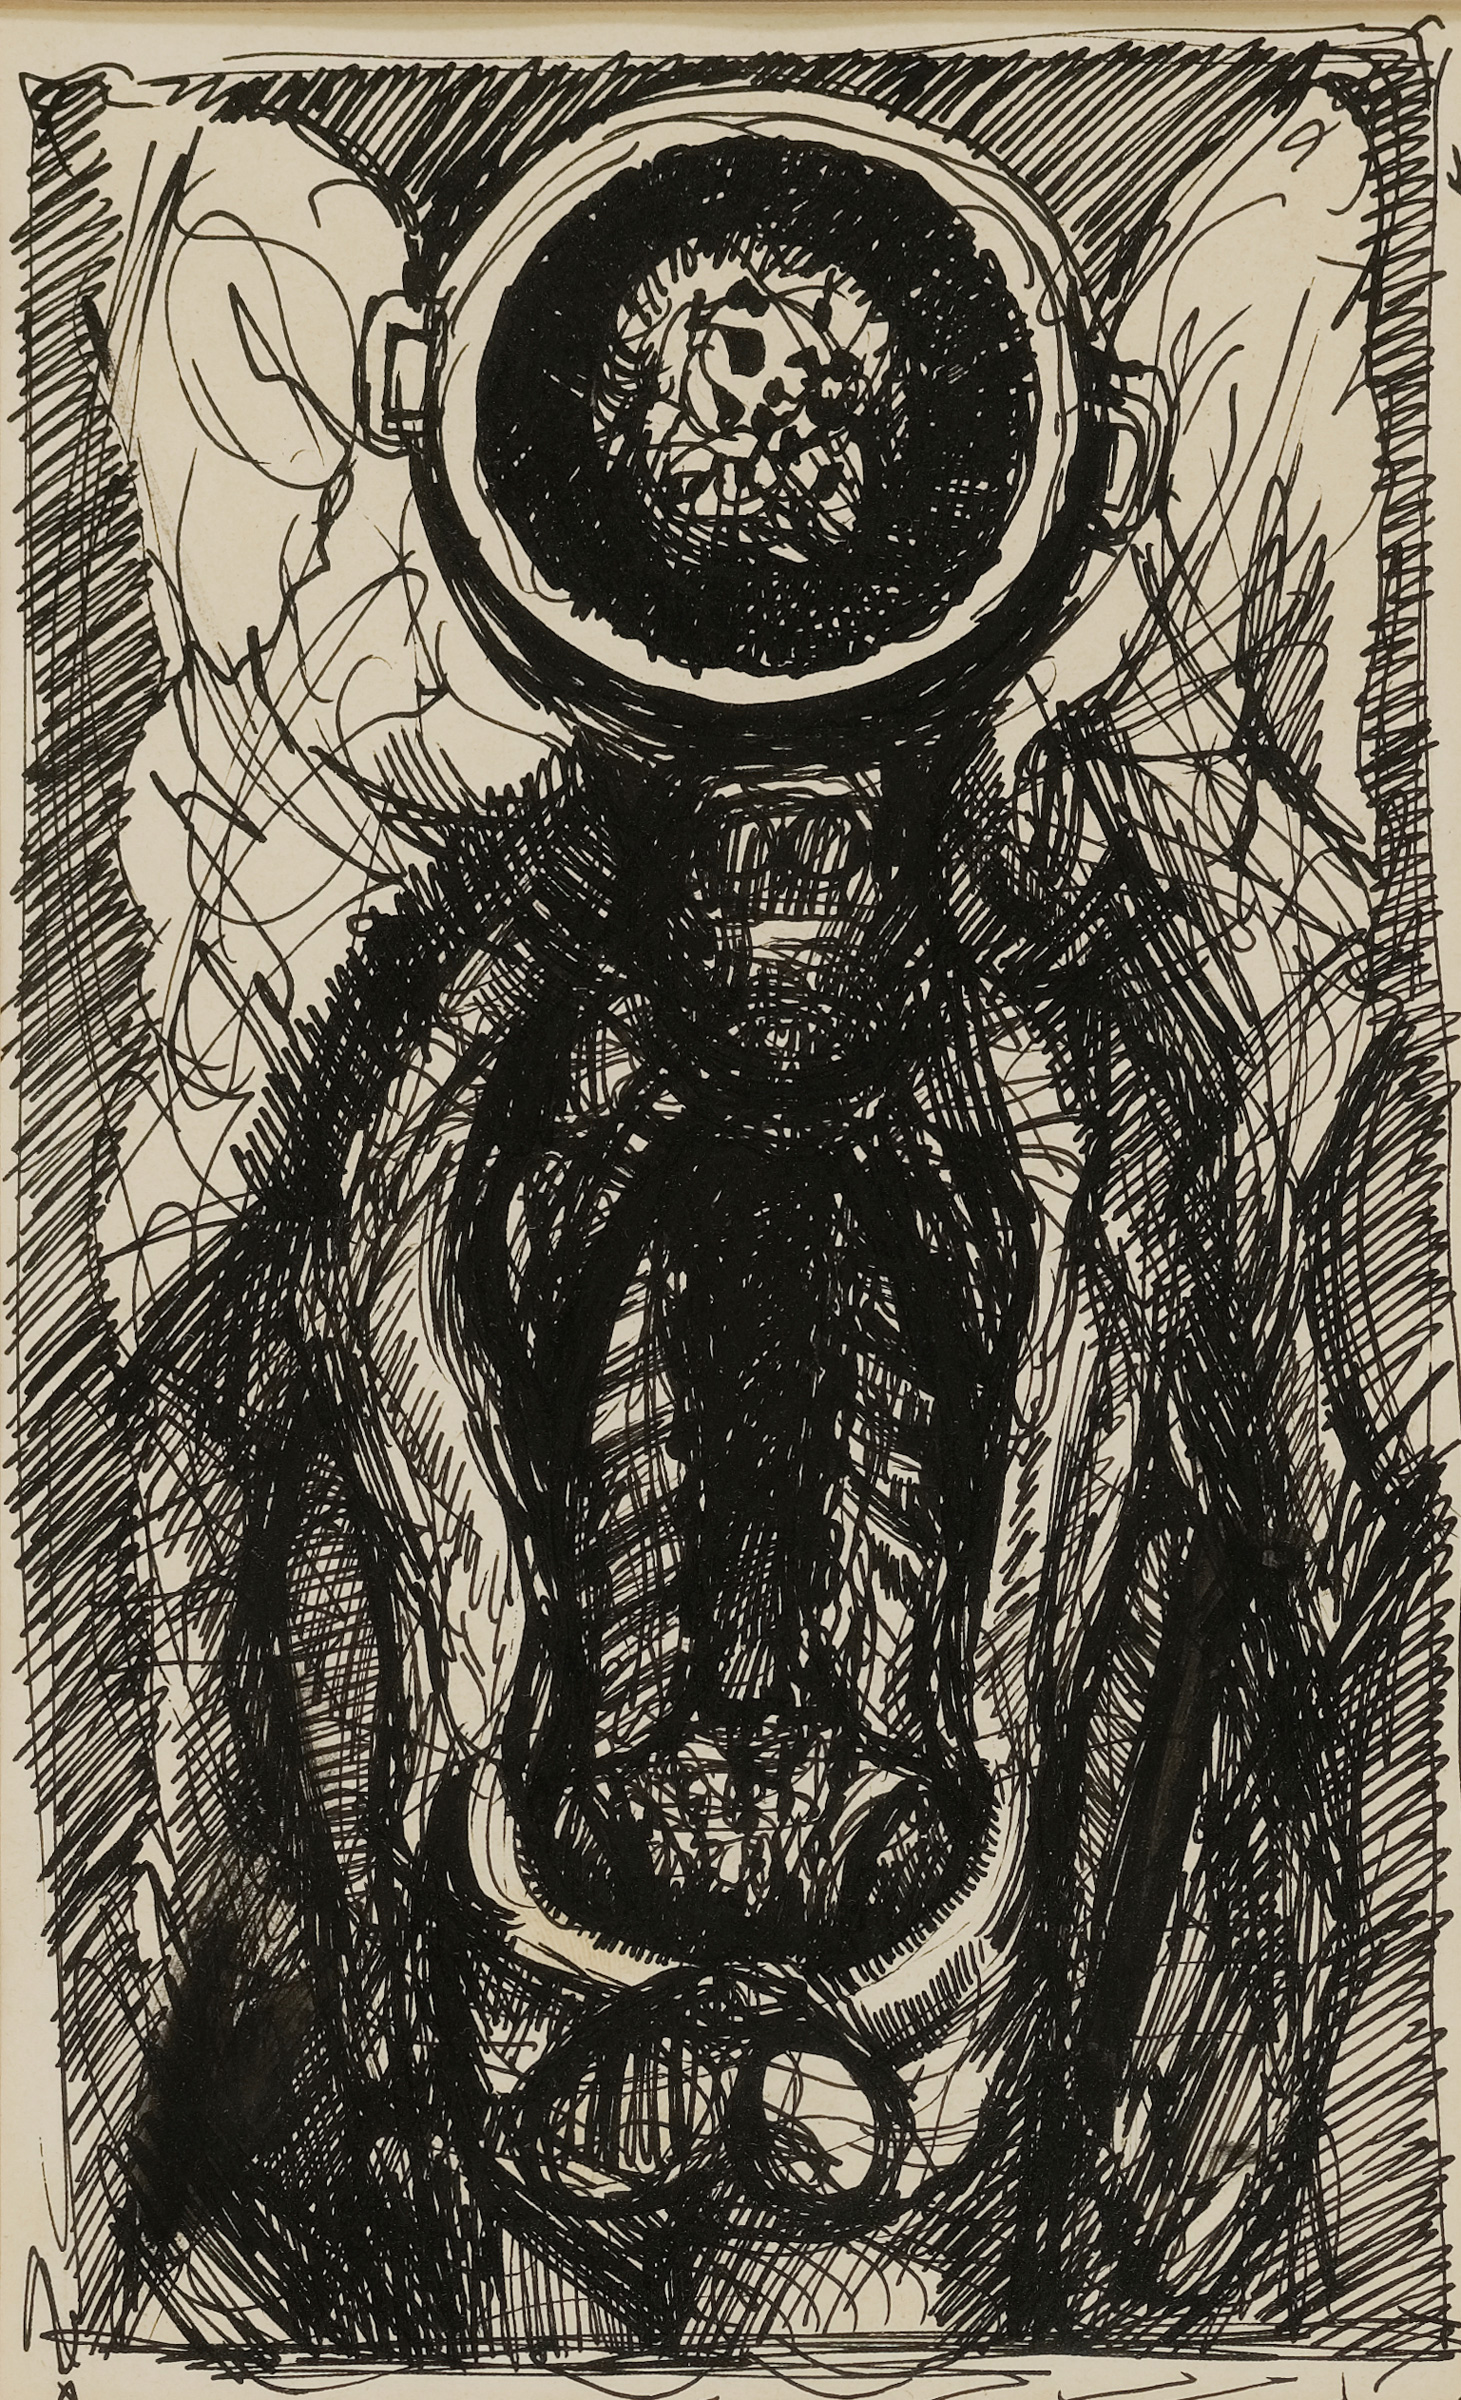 Autopsy Sketch (c. 1948-1952)